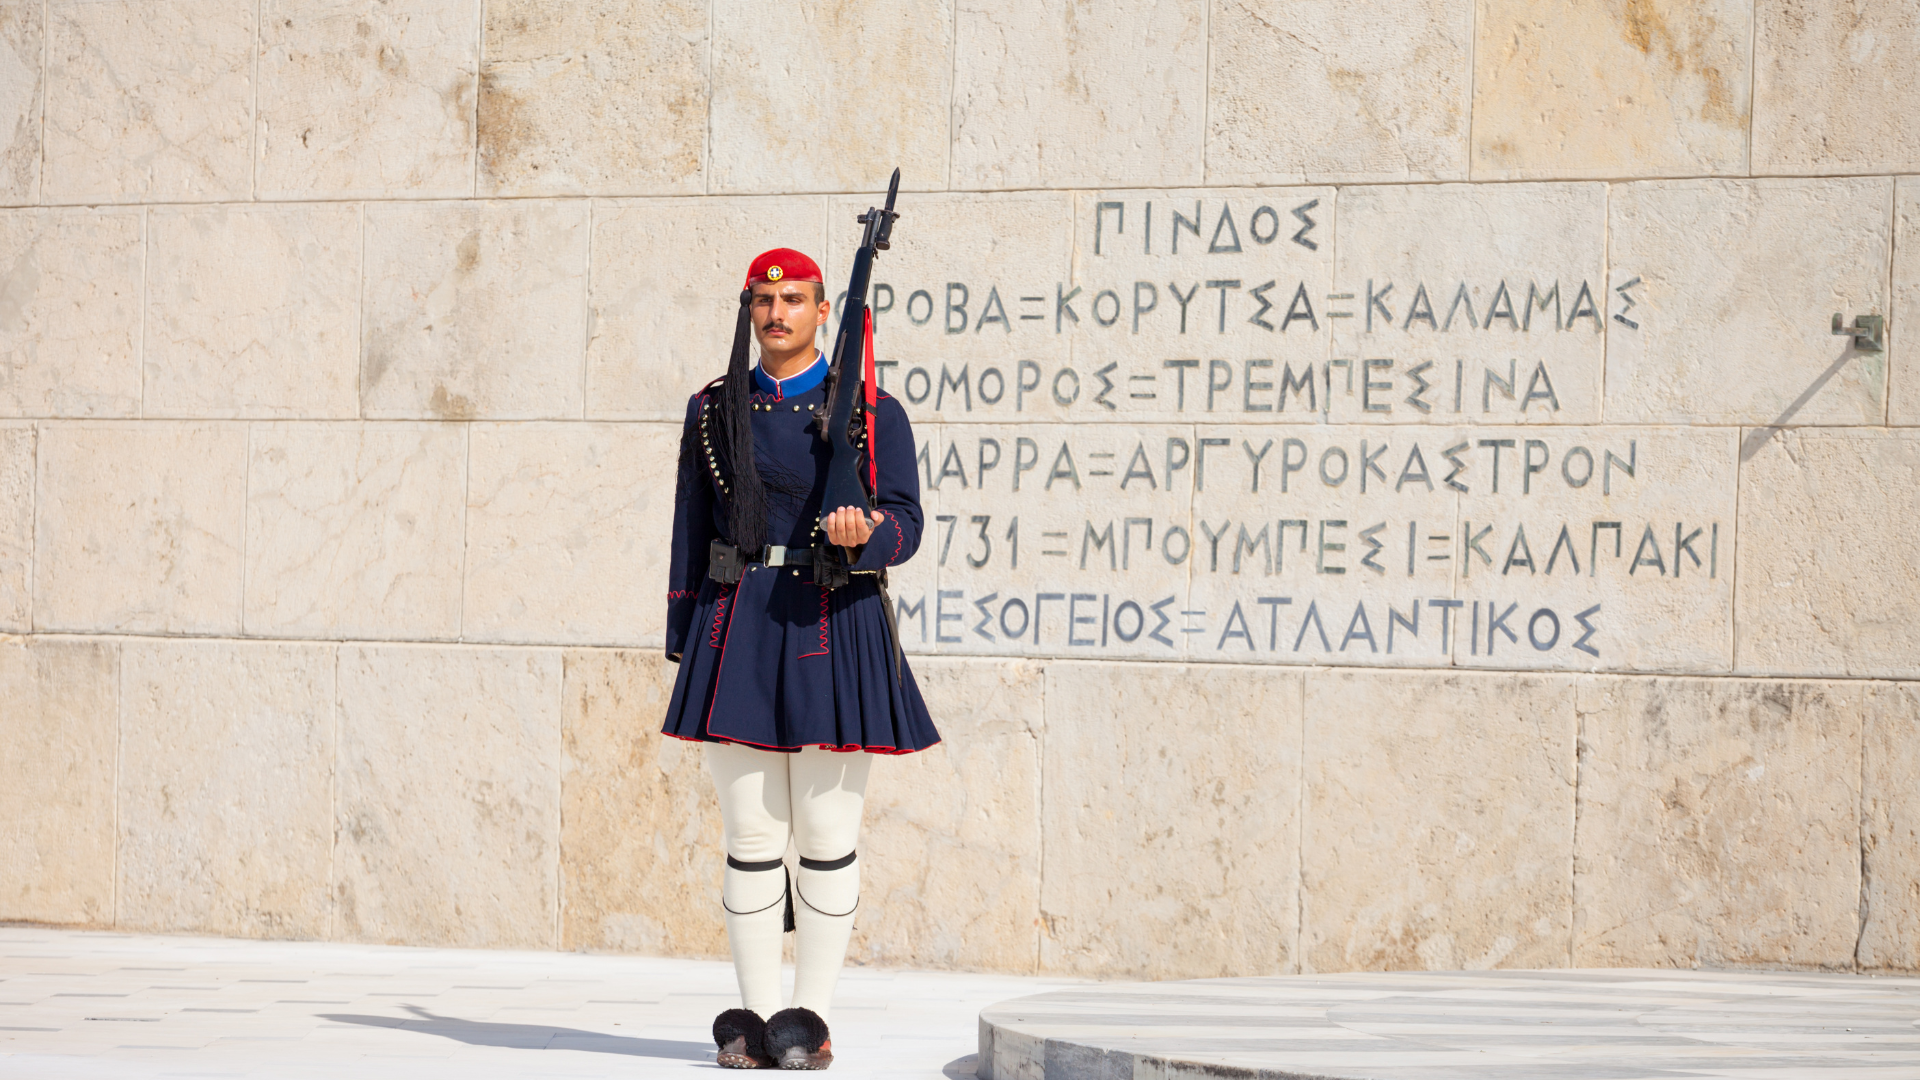 evzones in syntagma